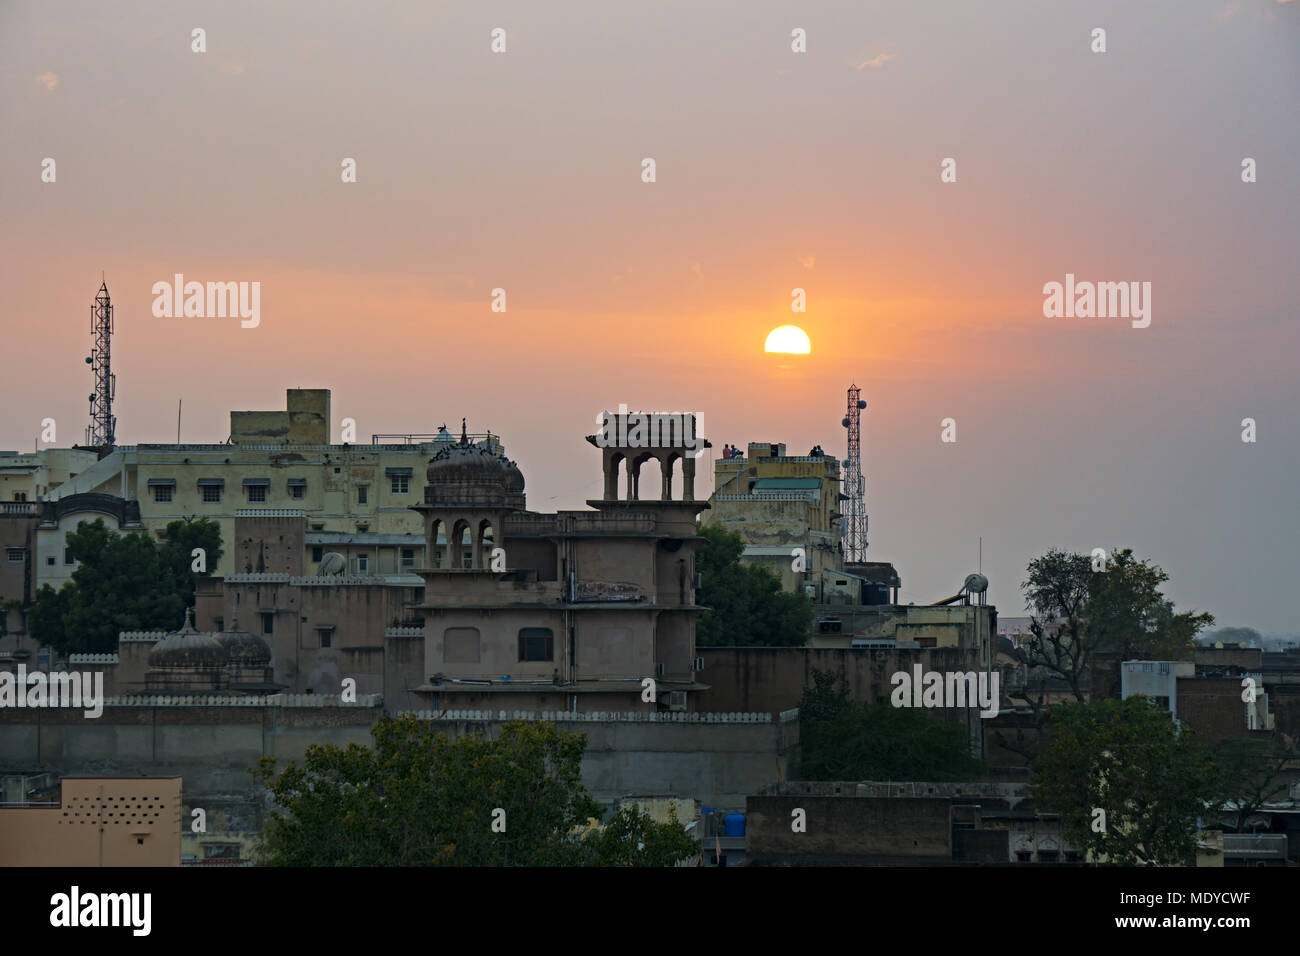 Sunset over Mandawa town in Shekhawati province, Jhunjhunu District, Rajasthan, India. Stock Photo